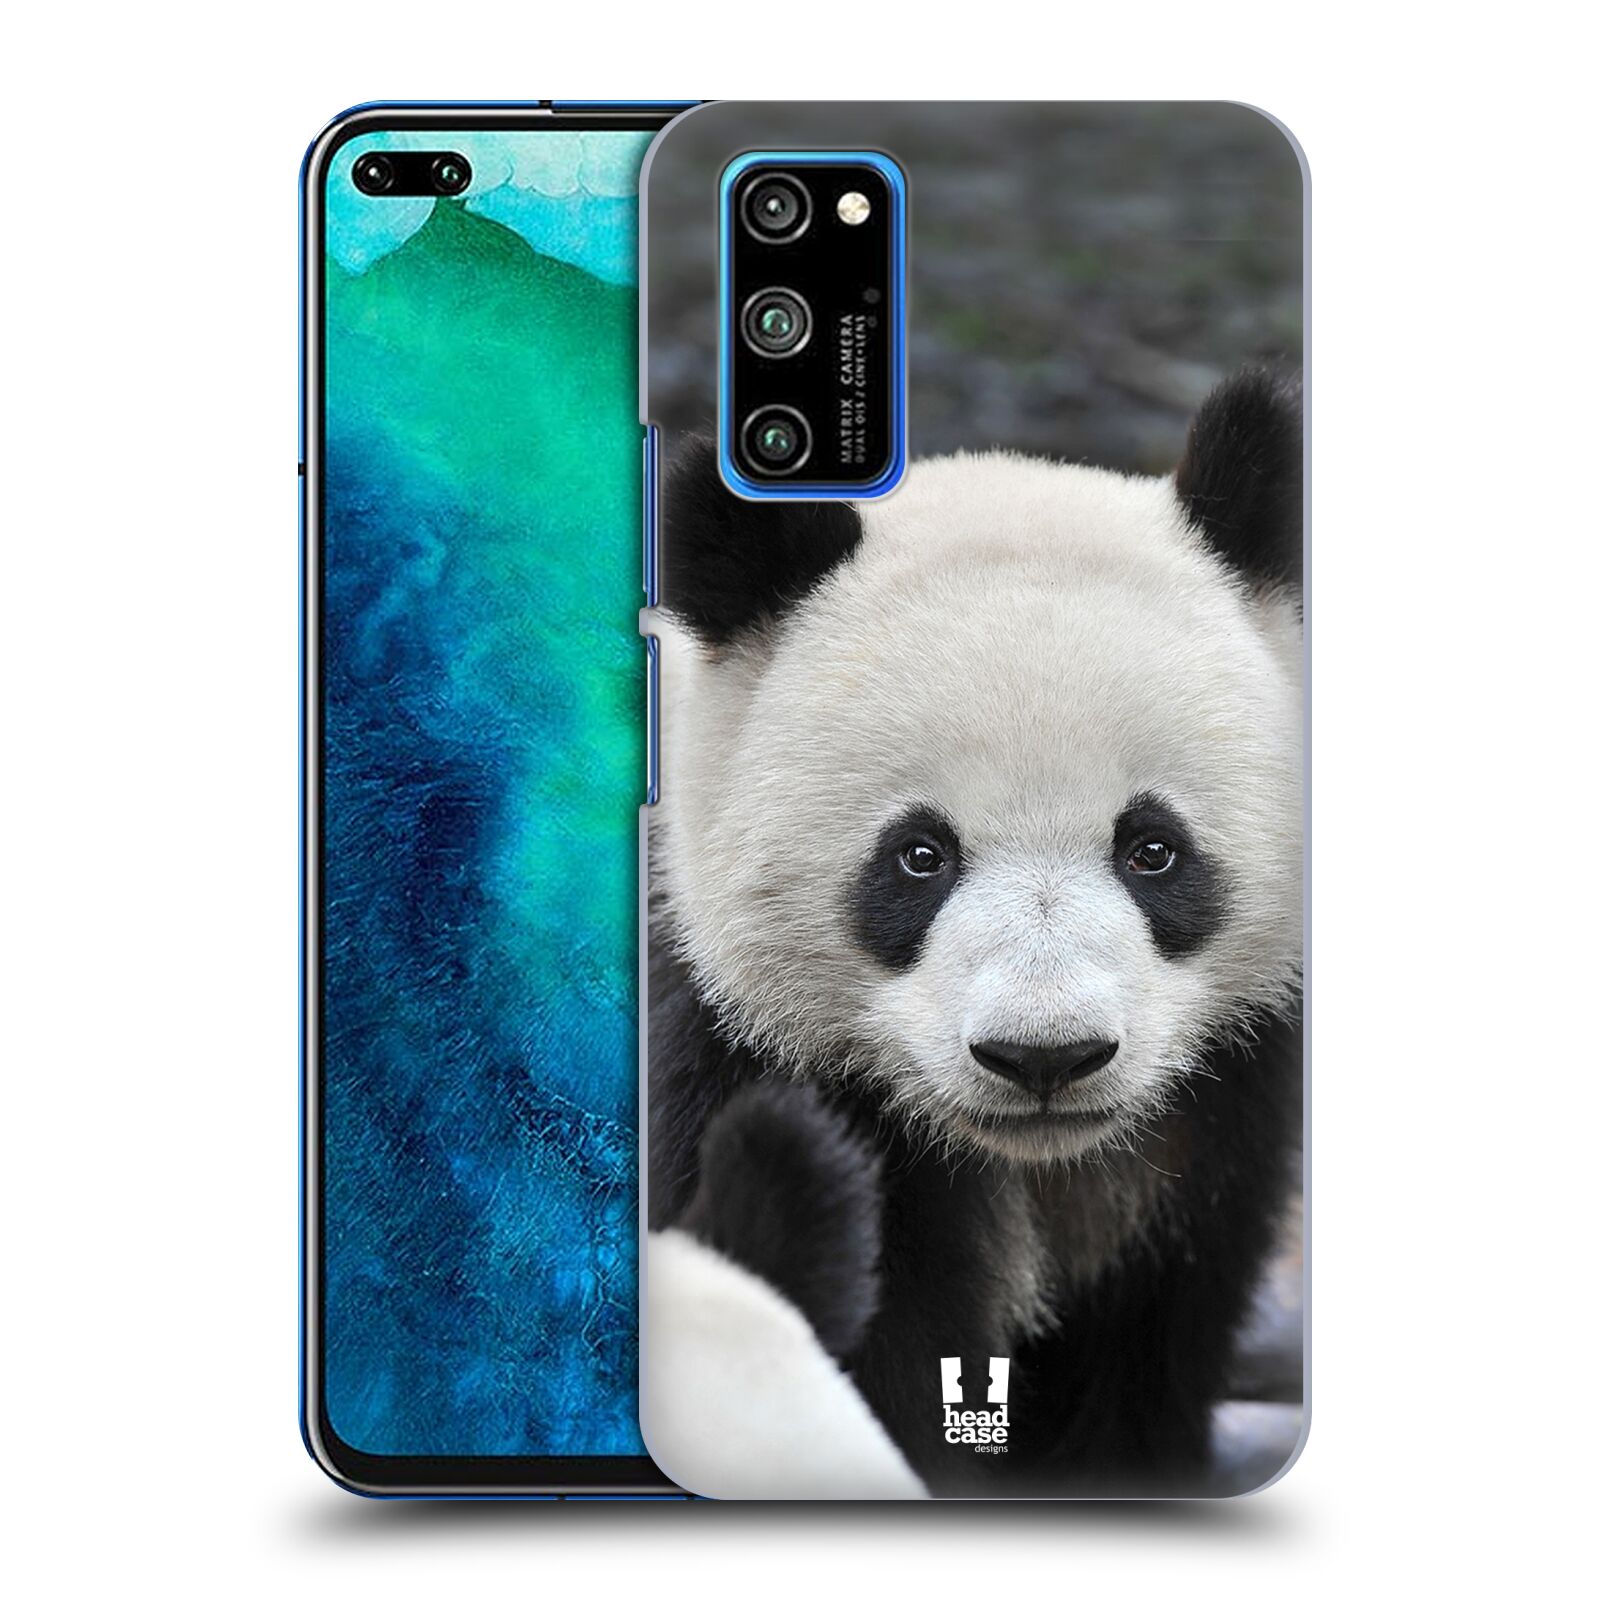 Zadní obal pro mobil Honor View 30 PRO - HEAD CASE - Svět zvířat medvěd panda